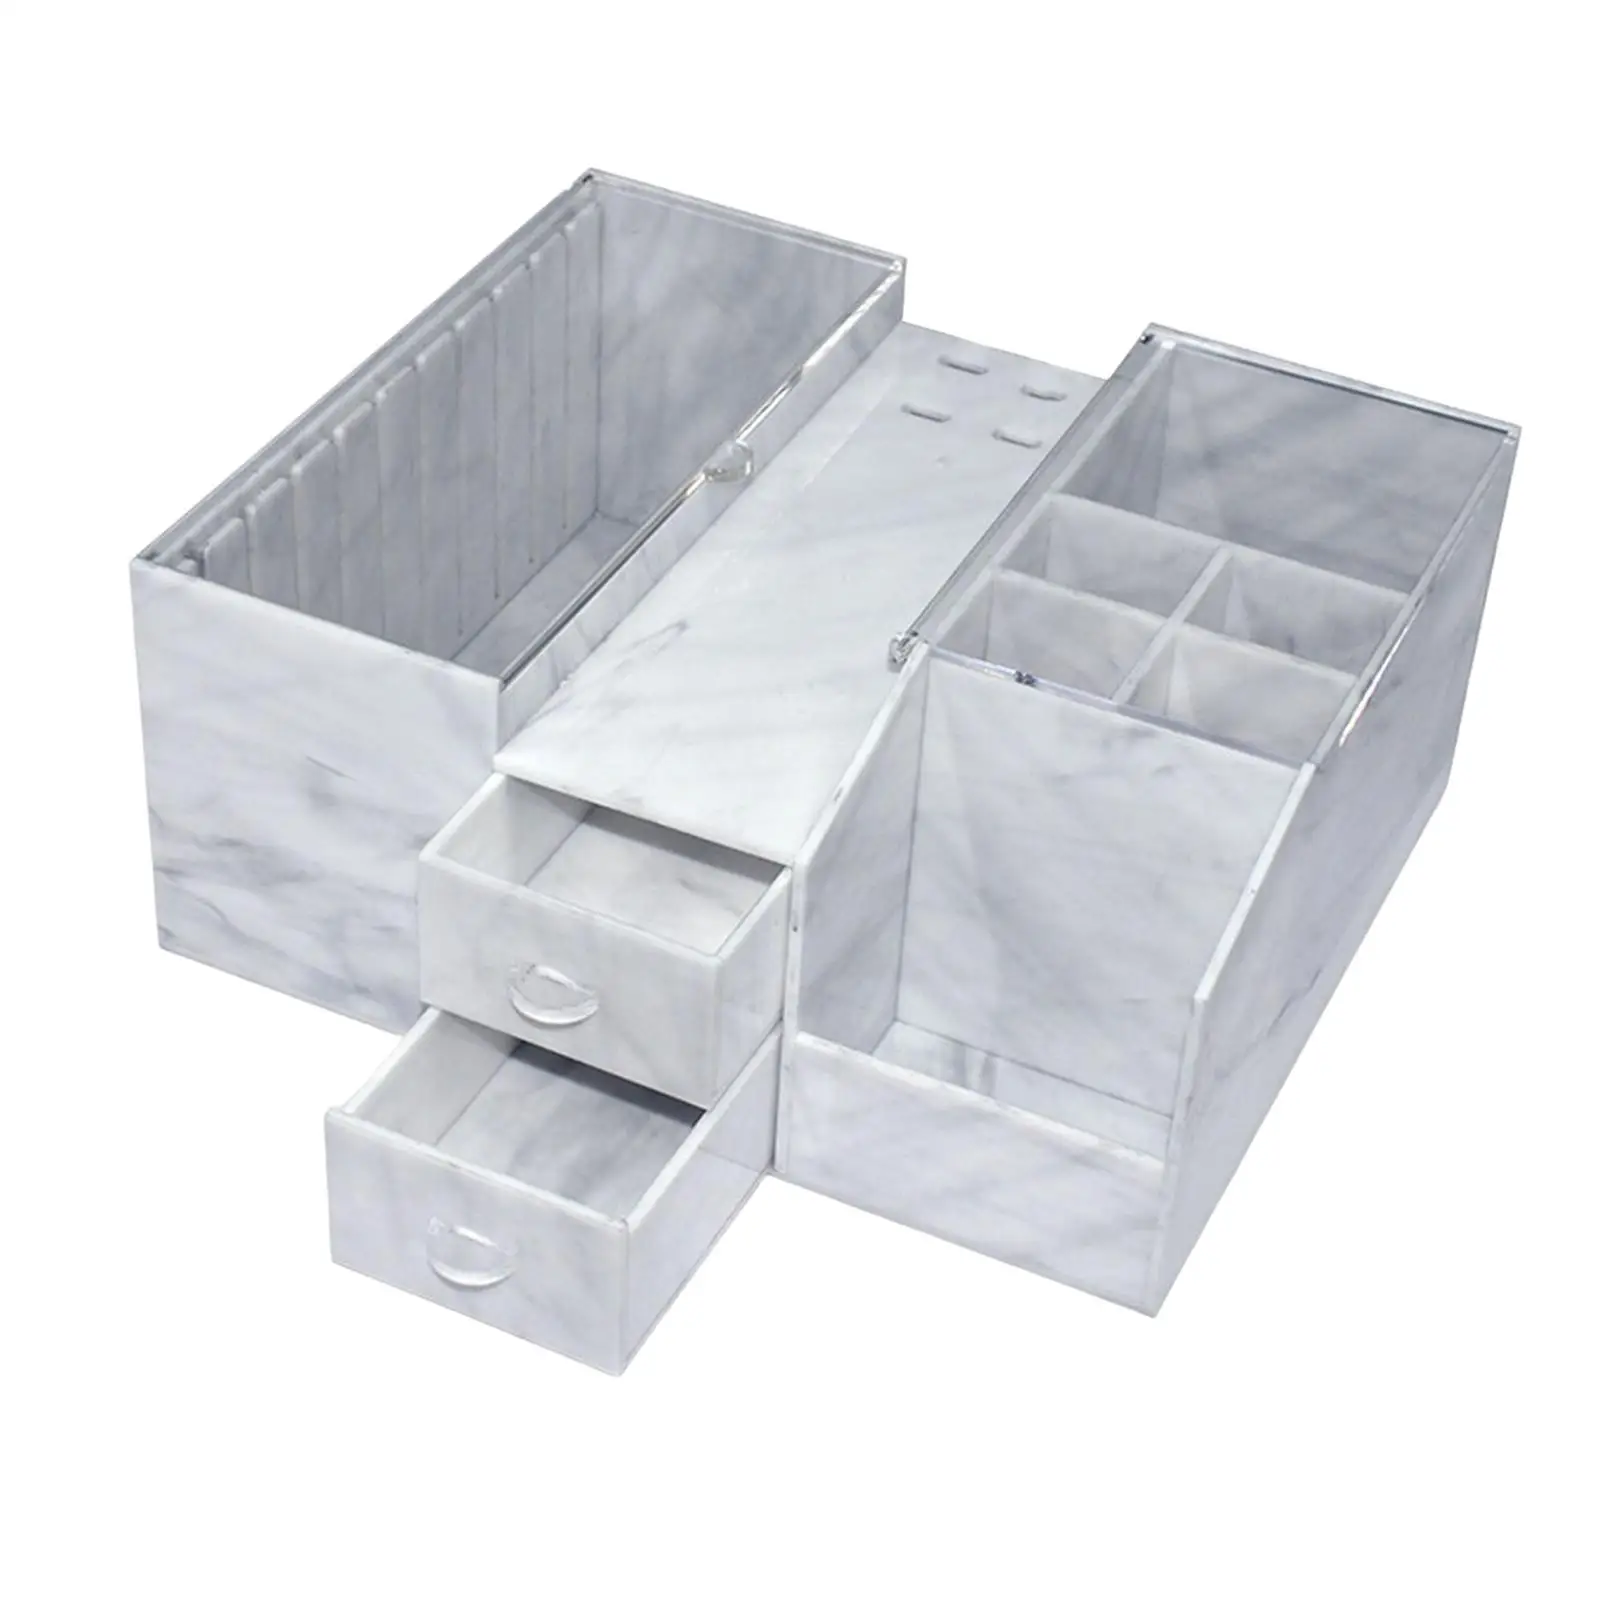 Acrylic Eyelash Storage Box Stand Transparent Large Capacity for Tweezers